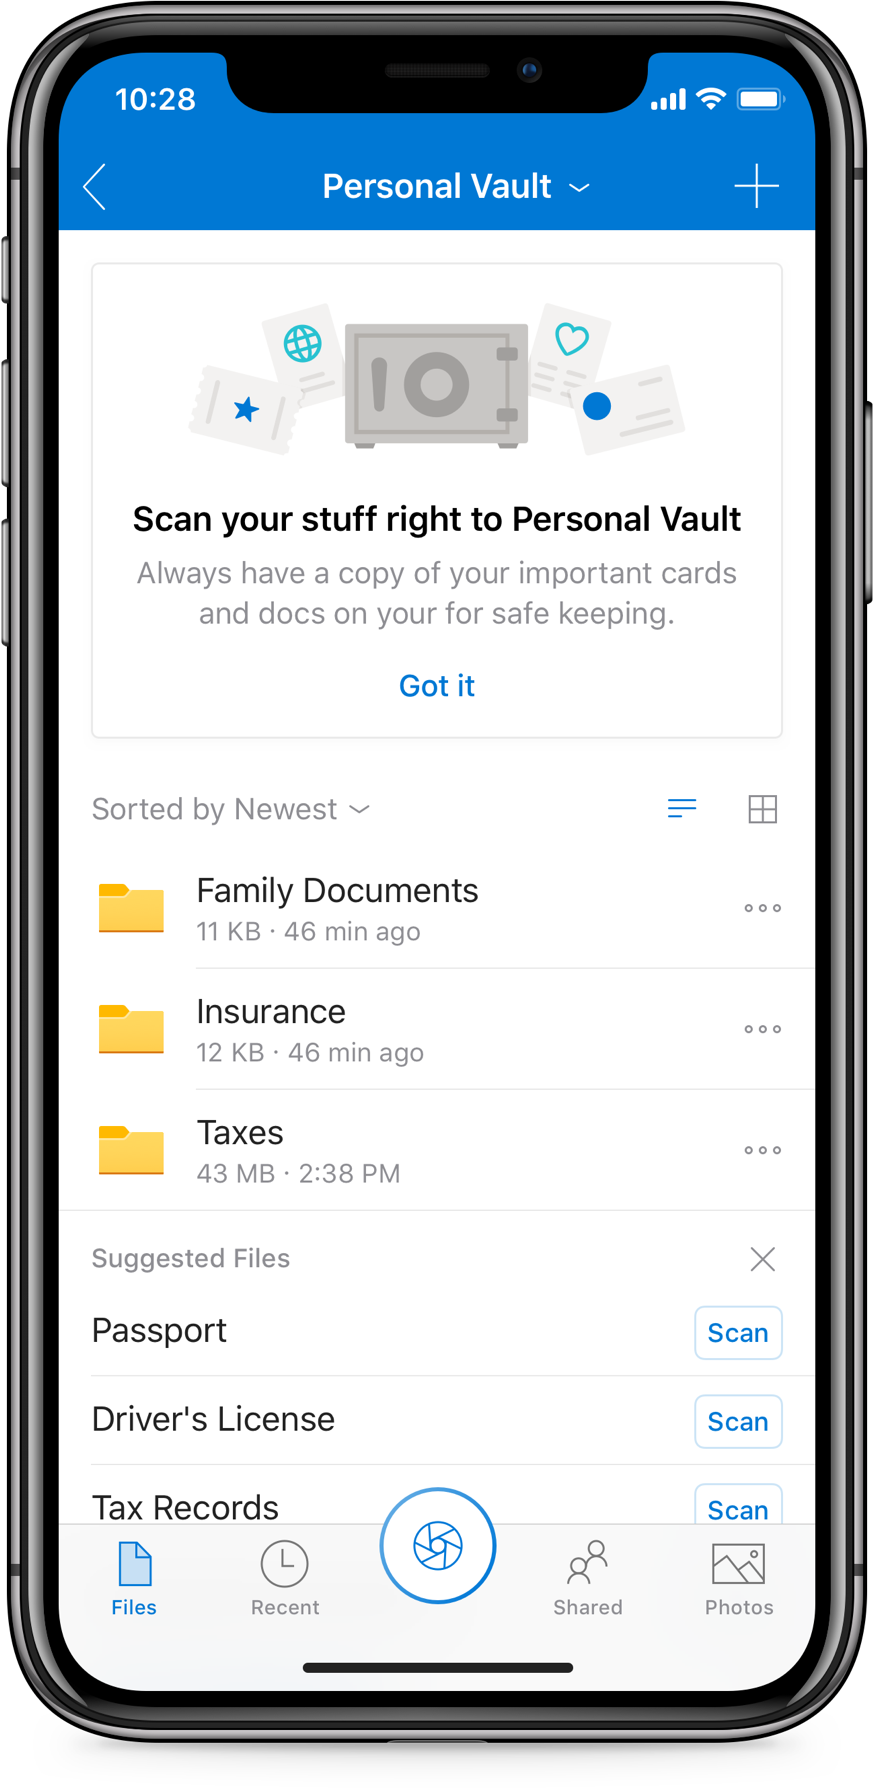 Hình ảnh hiển thị tùy chọn quét trong Kho lưu trữ cá nhân của OneDrive cho các tệp đã tải lên.